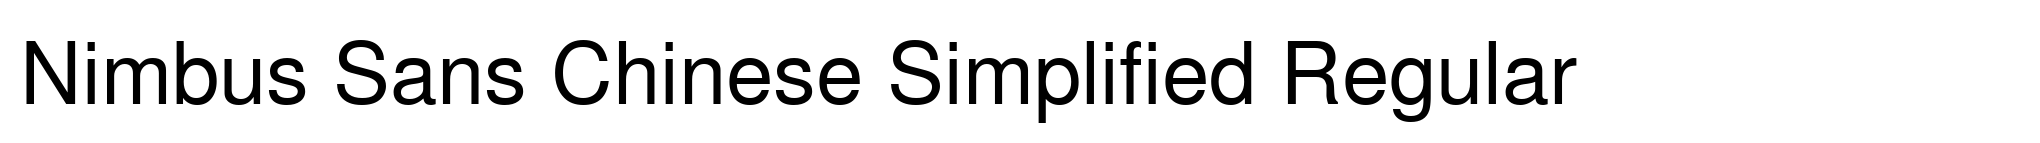 Nimbus Sans Chinese Simplified Regular image